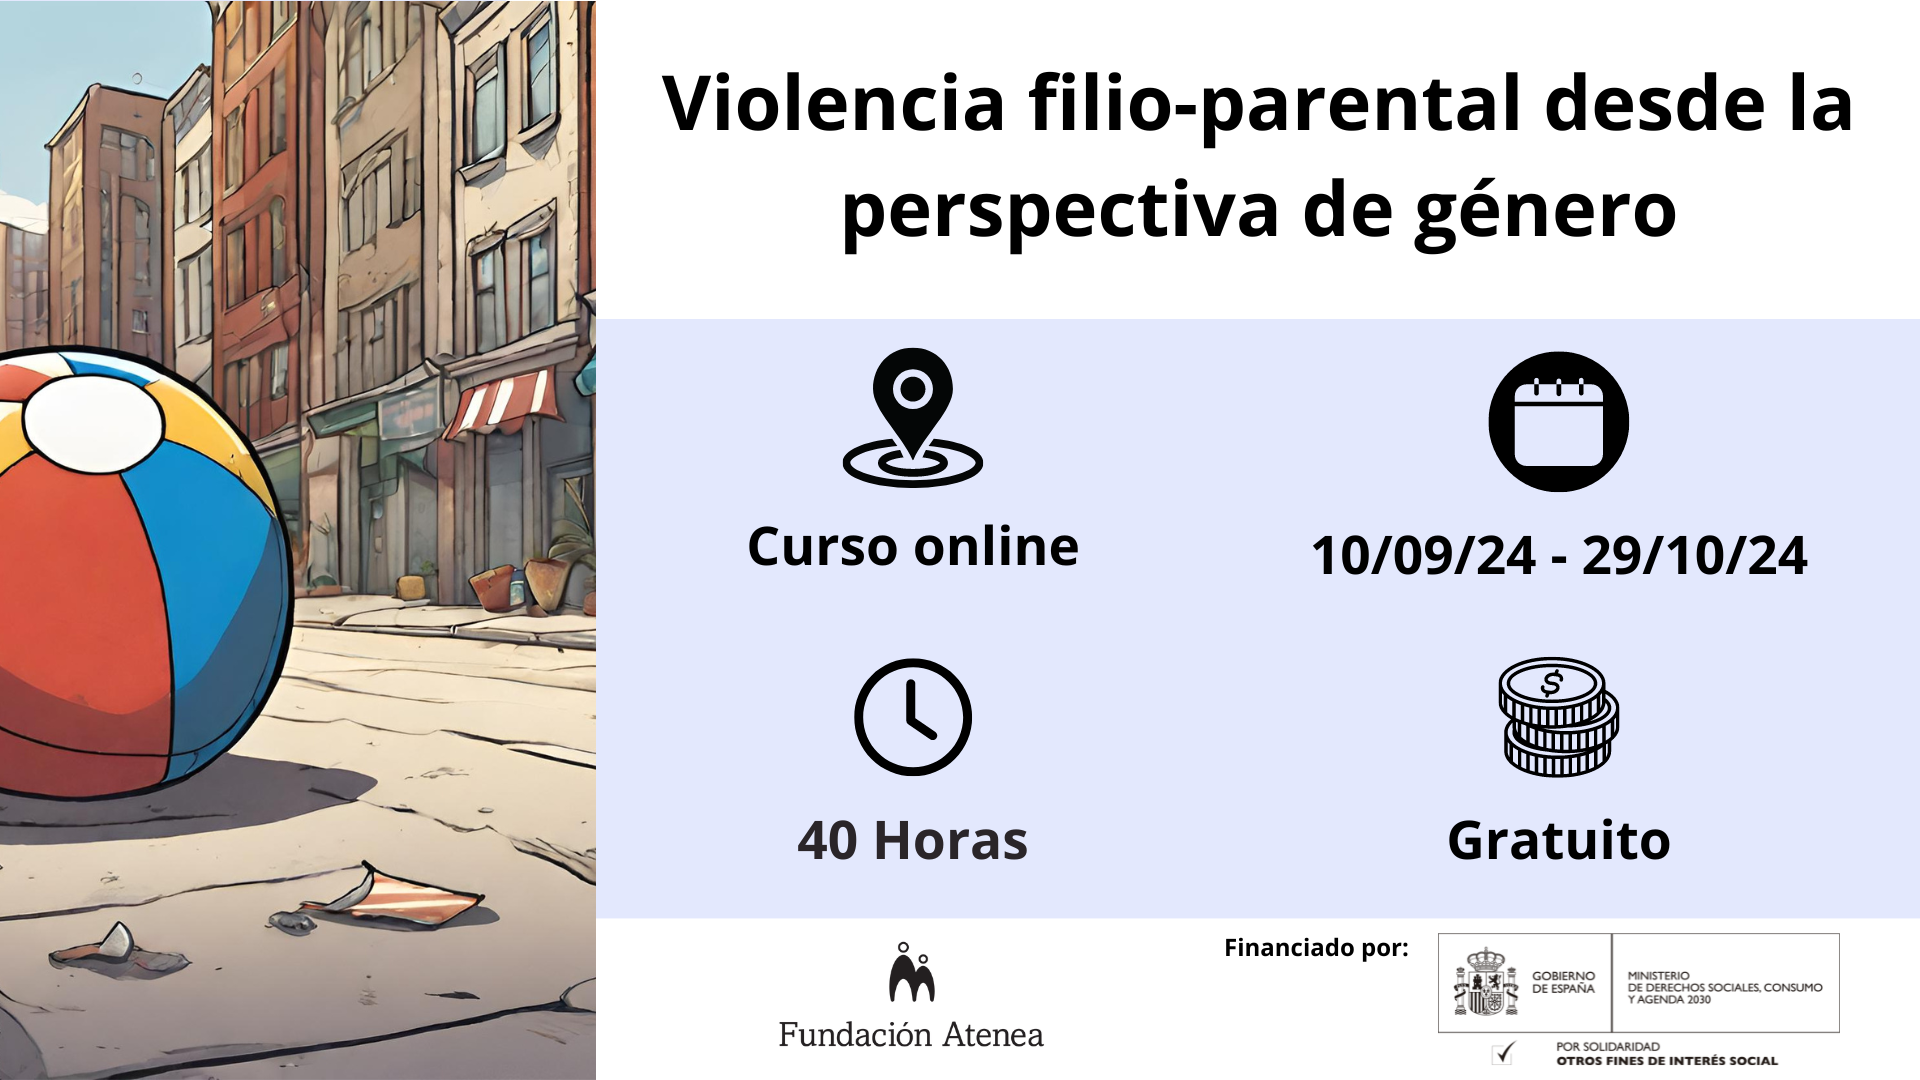 Intervención en violencia filio-parental desde la perspectiva de género. Curso Online gratuito realizado próximamente (40 horas)